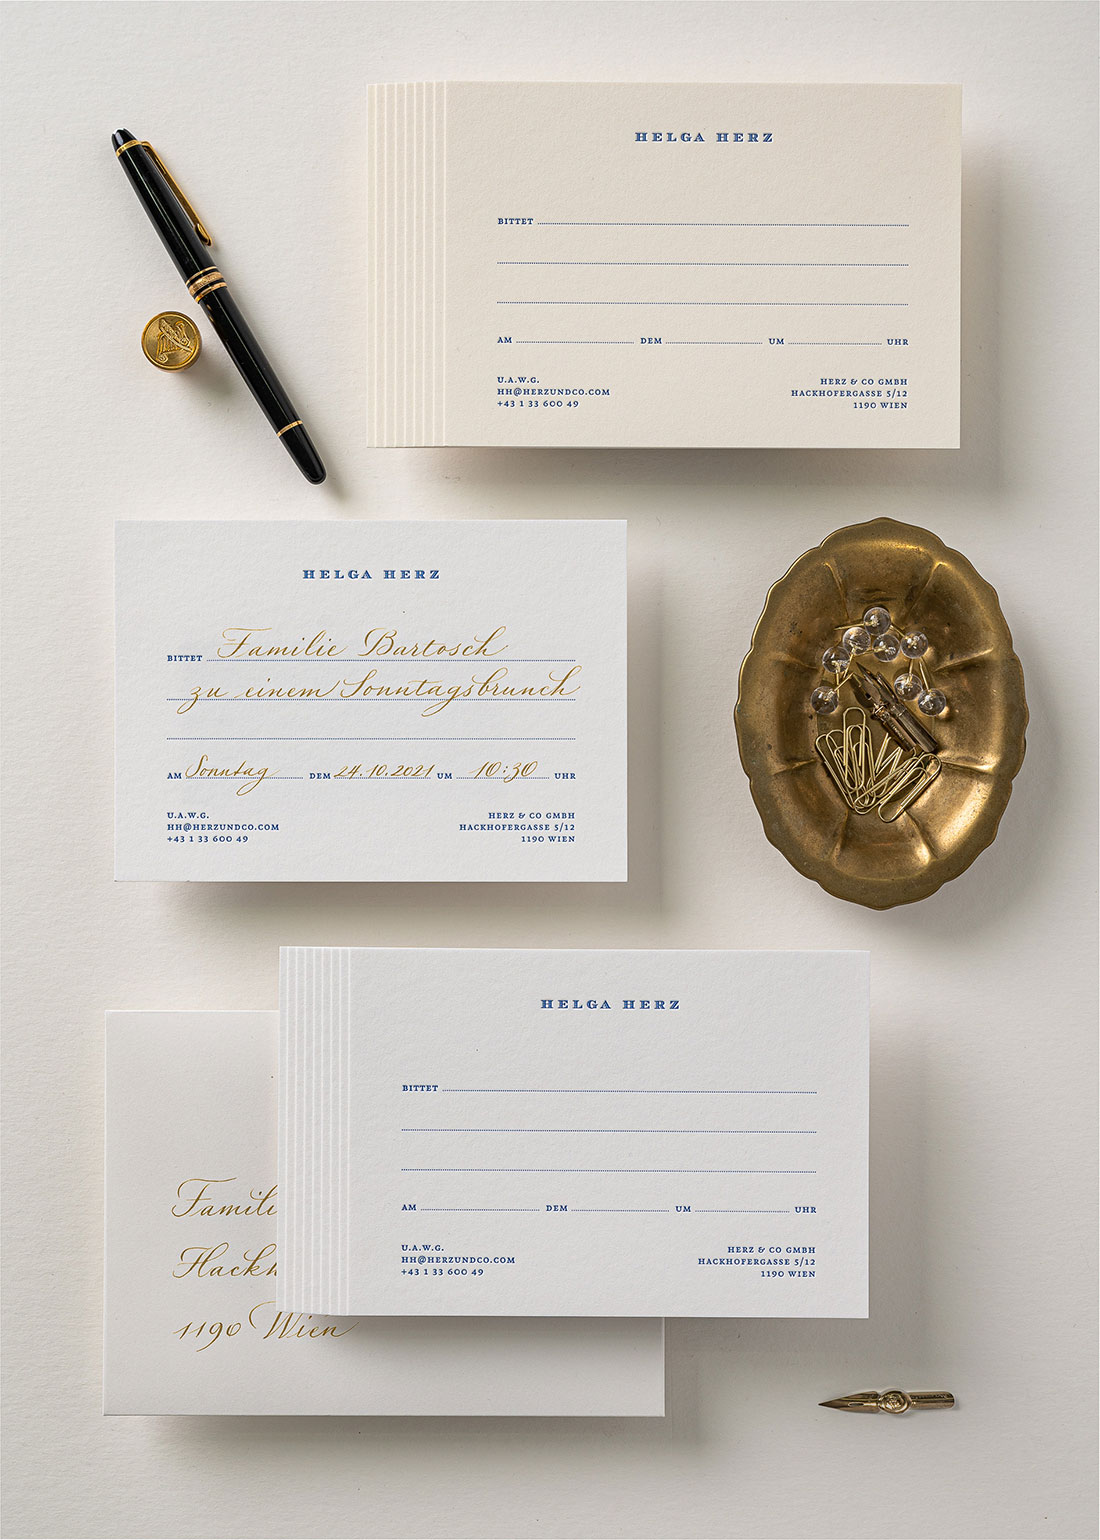 Klassische Einladungskarten Vorlagen mit blauer Druckfarbe im Letterpress bedruckt, die man für sämtliche Anlässe handschriftlich ausfüllen kann. Als Einladung zu Abendessen, zum Brunch, etc.